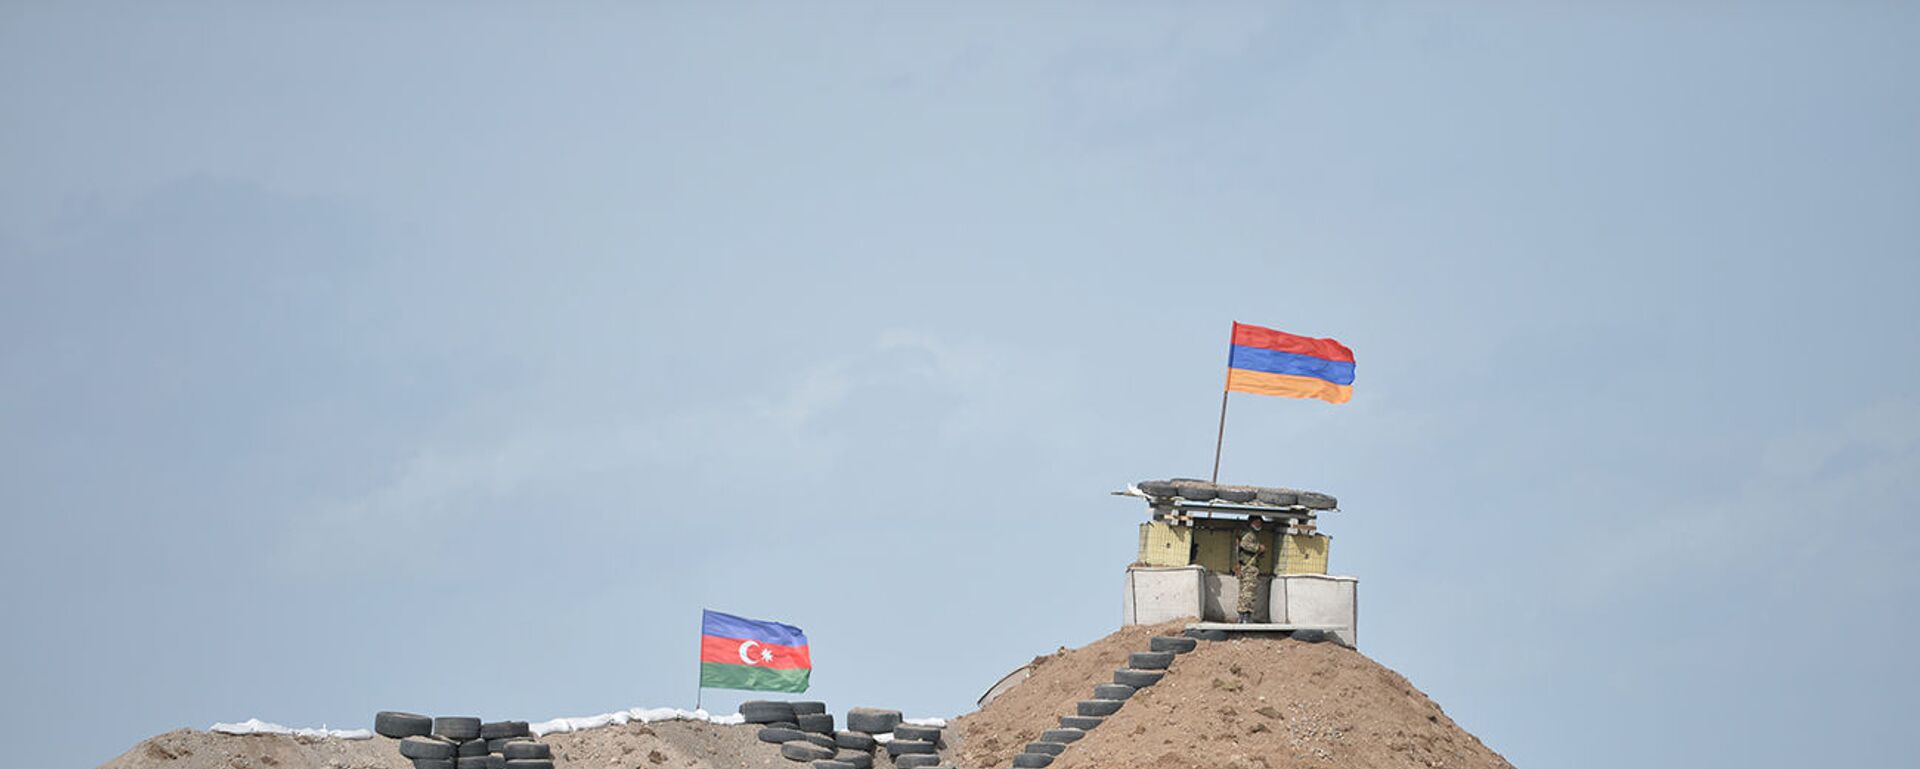 Военные посты на армянсо-азербайджанской границе - Sputnik Արմենիա, 1920, 29.05.2021